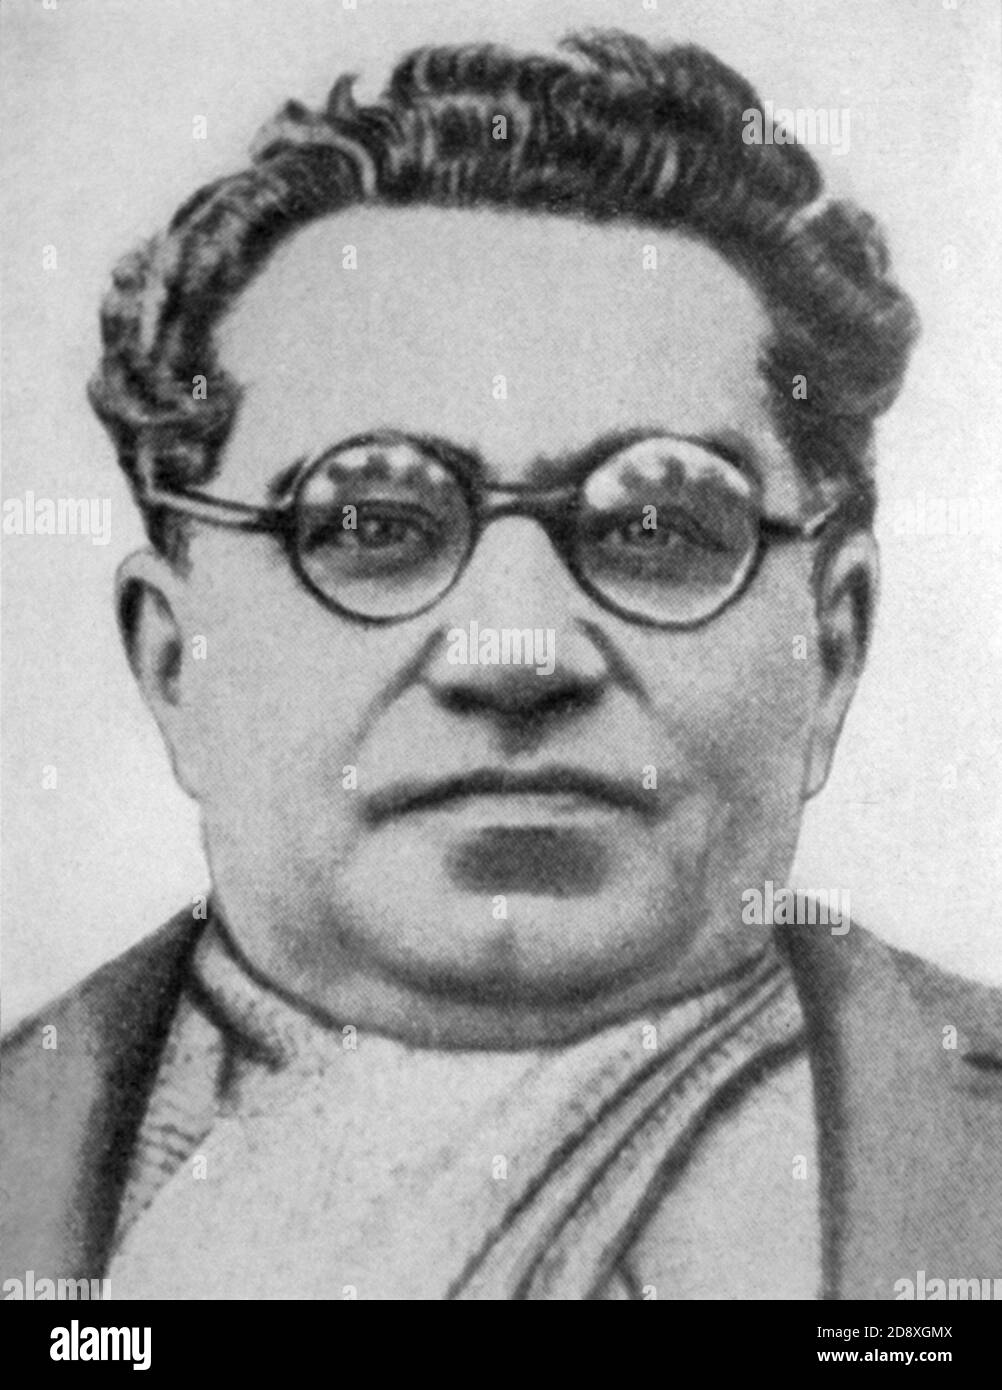 1937 ca. : ANTONIO GRAMSCI ( Ales , Oristano 1891 - Roma 1937 ) italienischer Intellektueller, Schriftsteller und Kommunist - PARTITO COMUNISTA ITALIANO - PCI - POLITICO - POLITIKER - POLITIK - POLITIK - Objektiv - occhiali da vista - GESCHICHTE - FOTO STORICHE ---- Archivio GBB Stockfoto